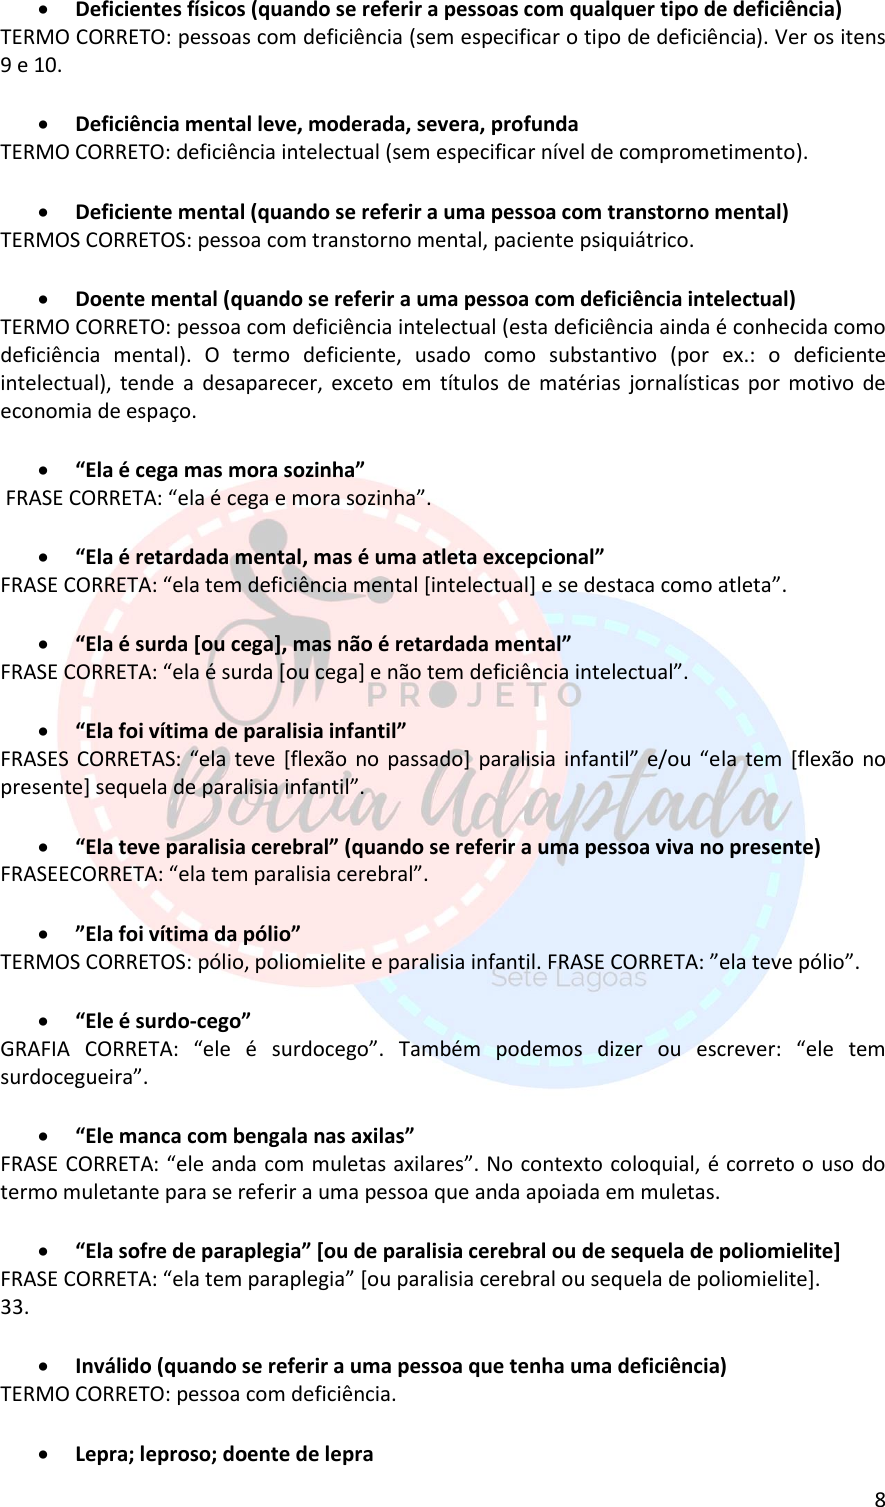 Page 8 of 10 - Manual Boccia-v1